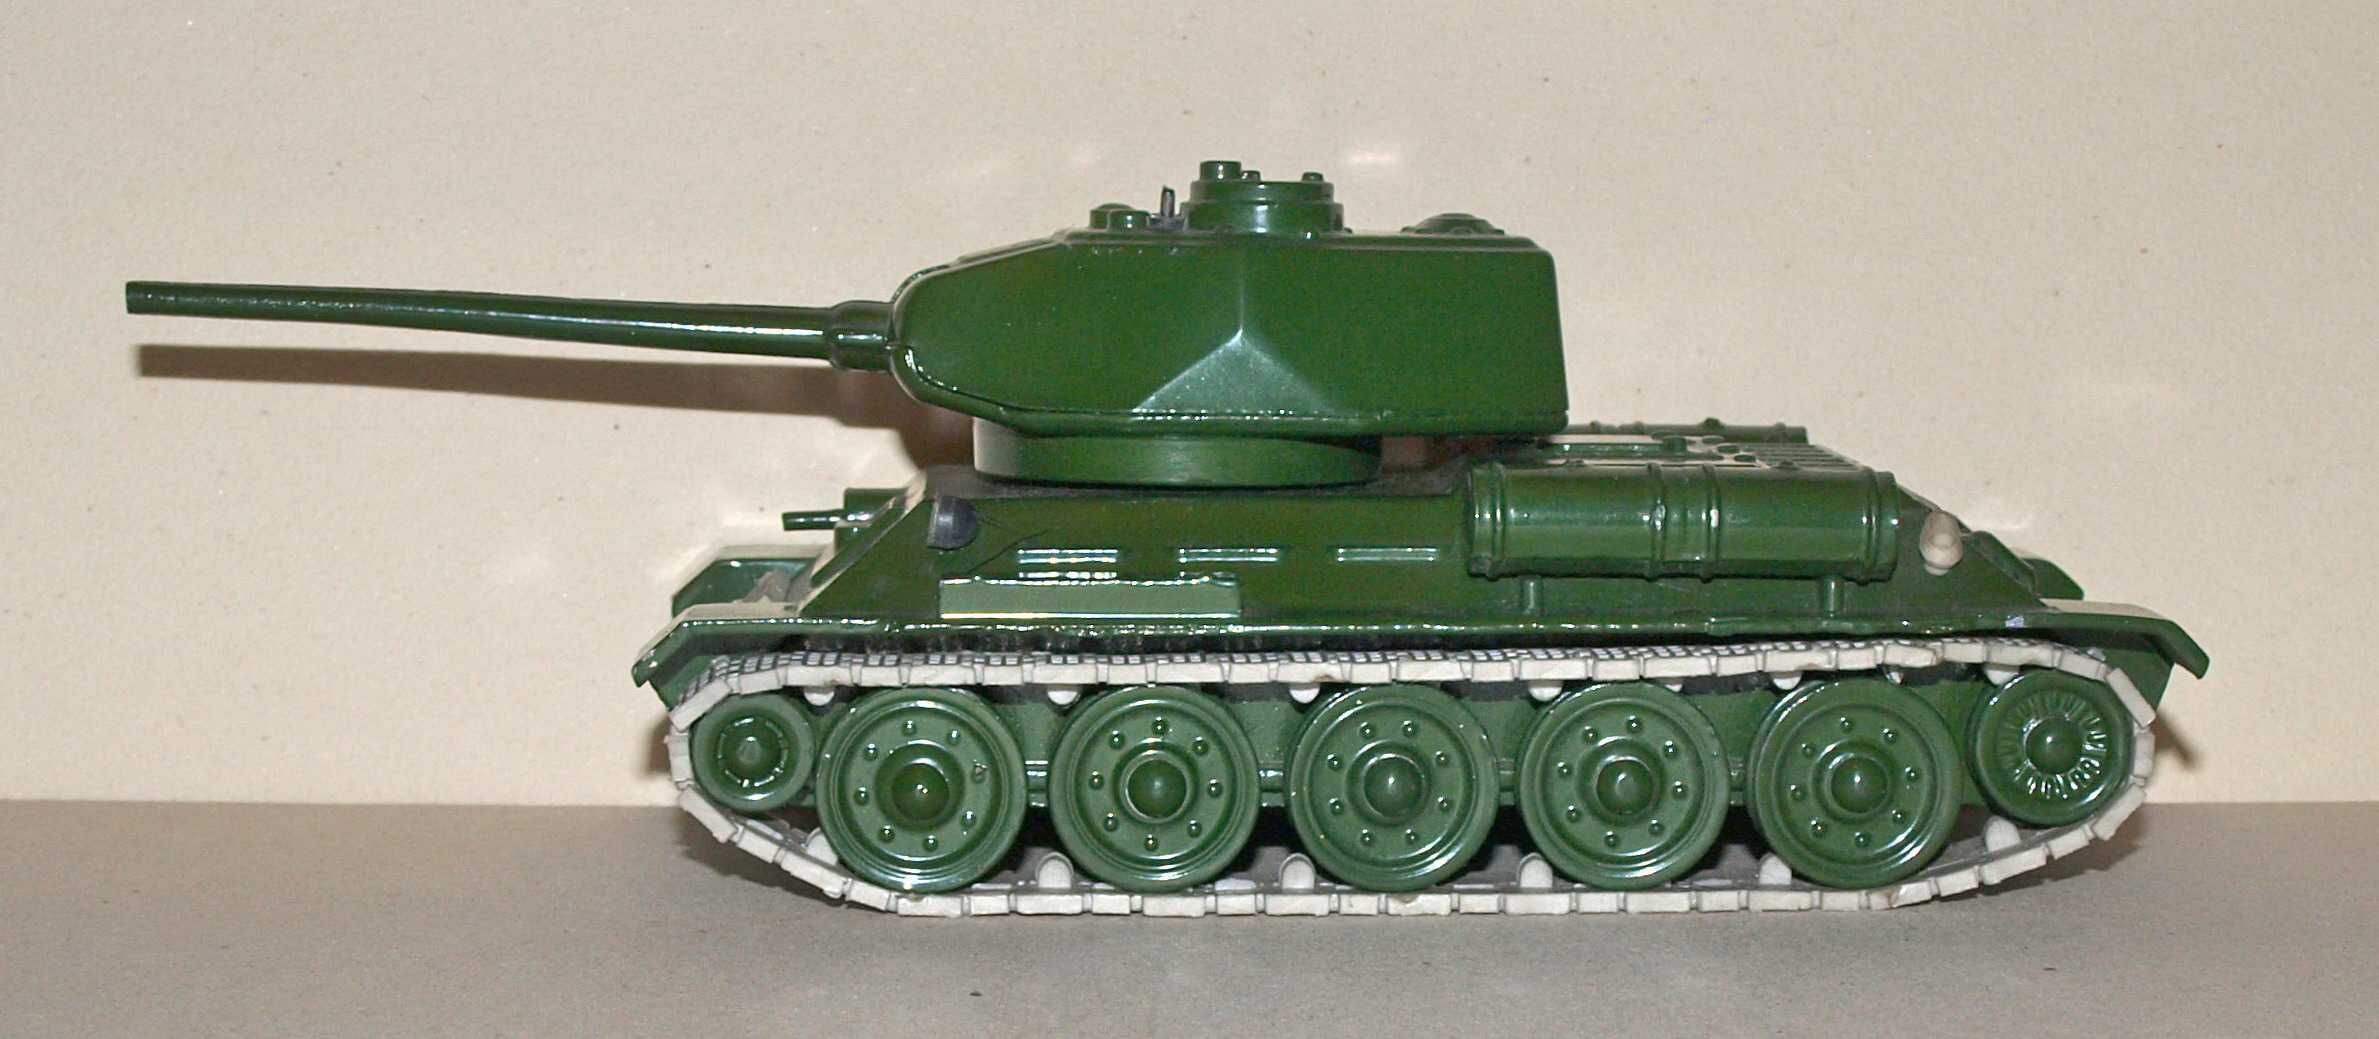 Czołg T-34/85 1/43 model metalowy ZSRR